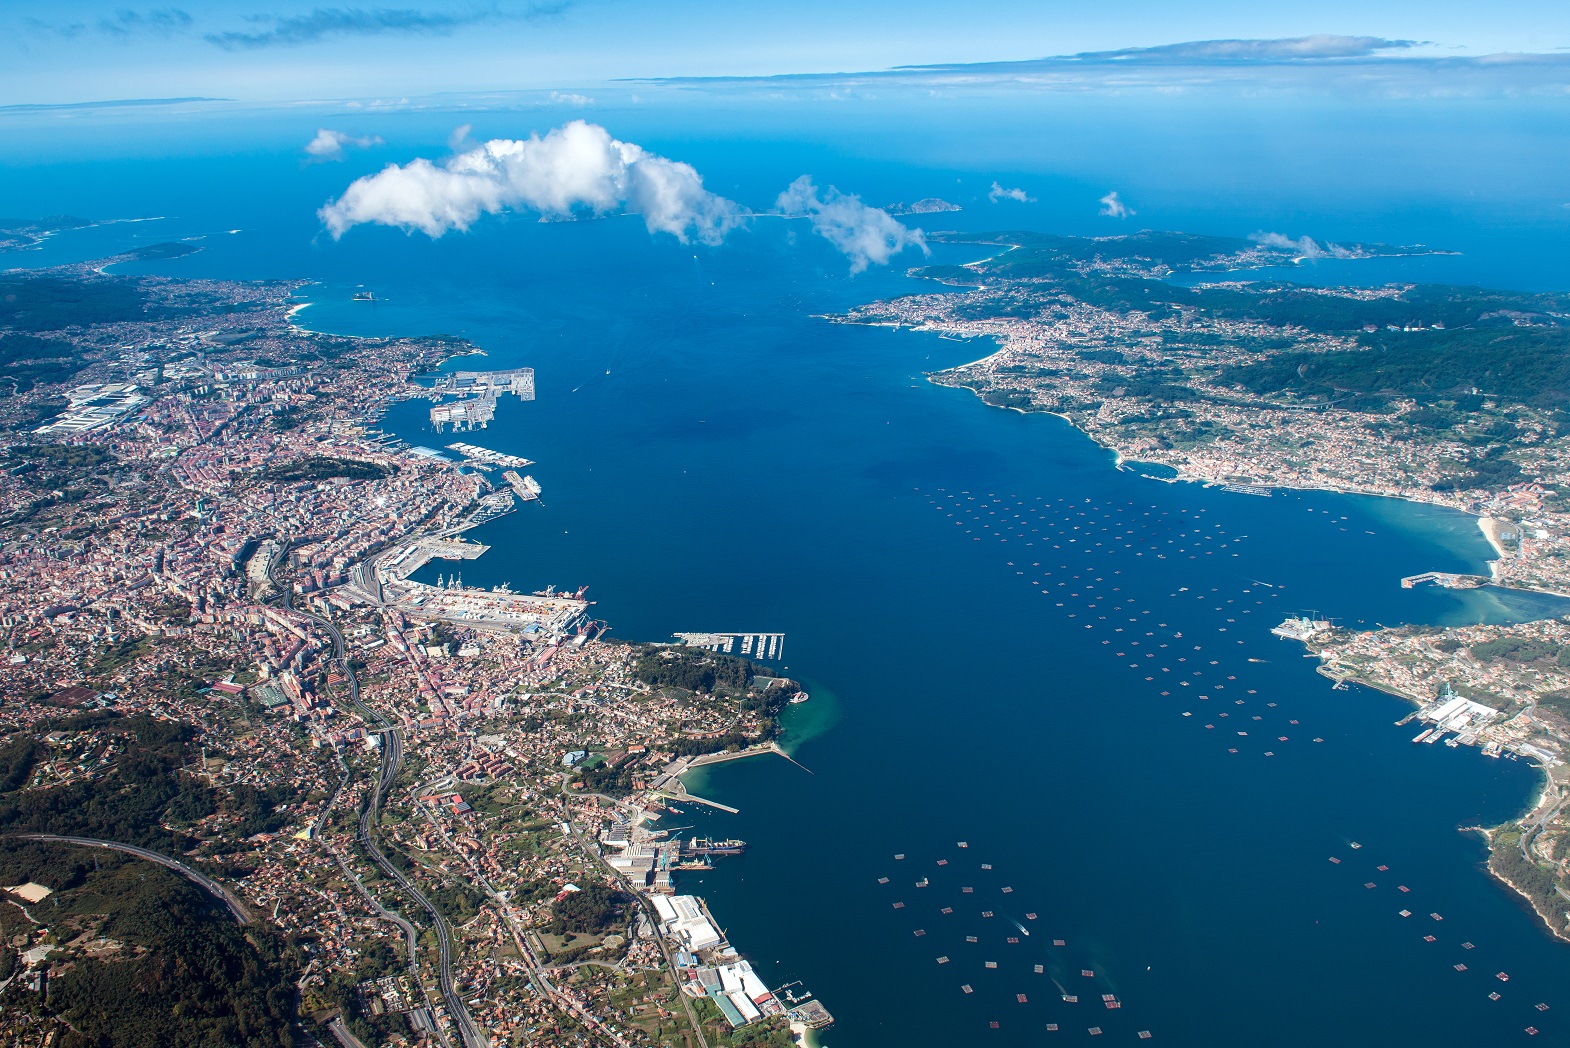 Fotografia aerea de la ría de Vigo